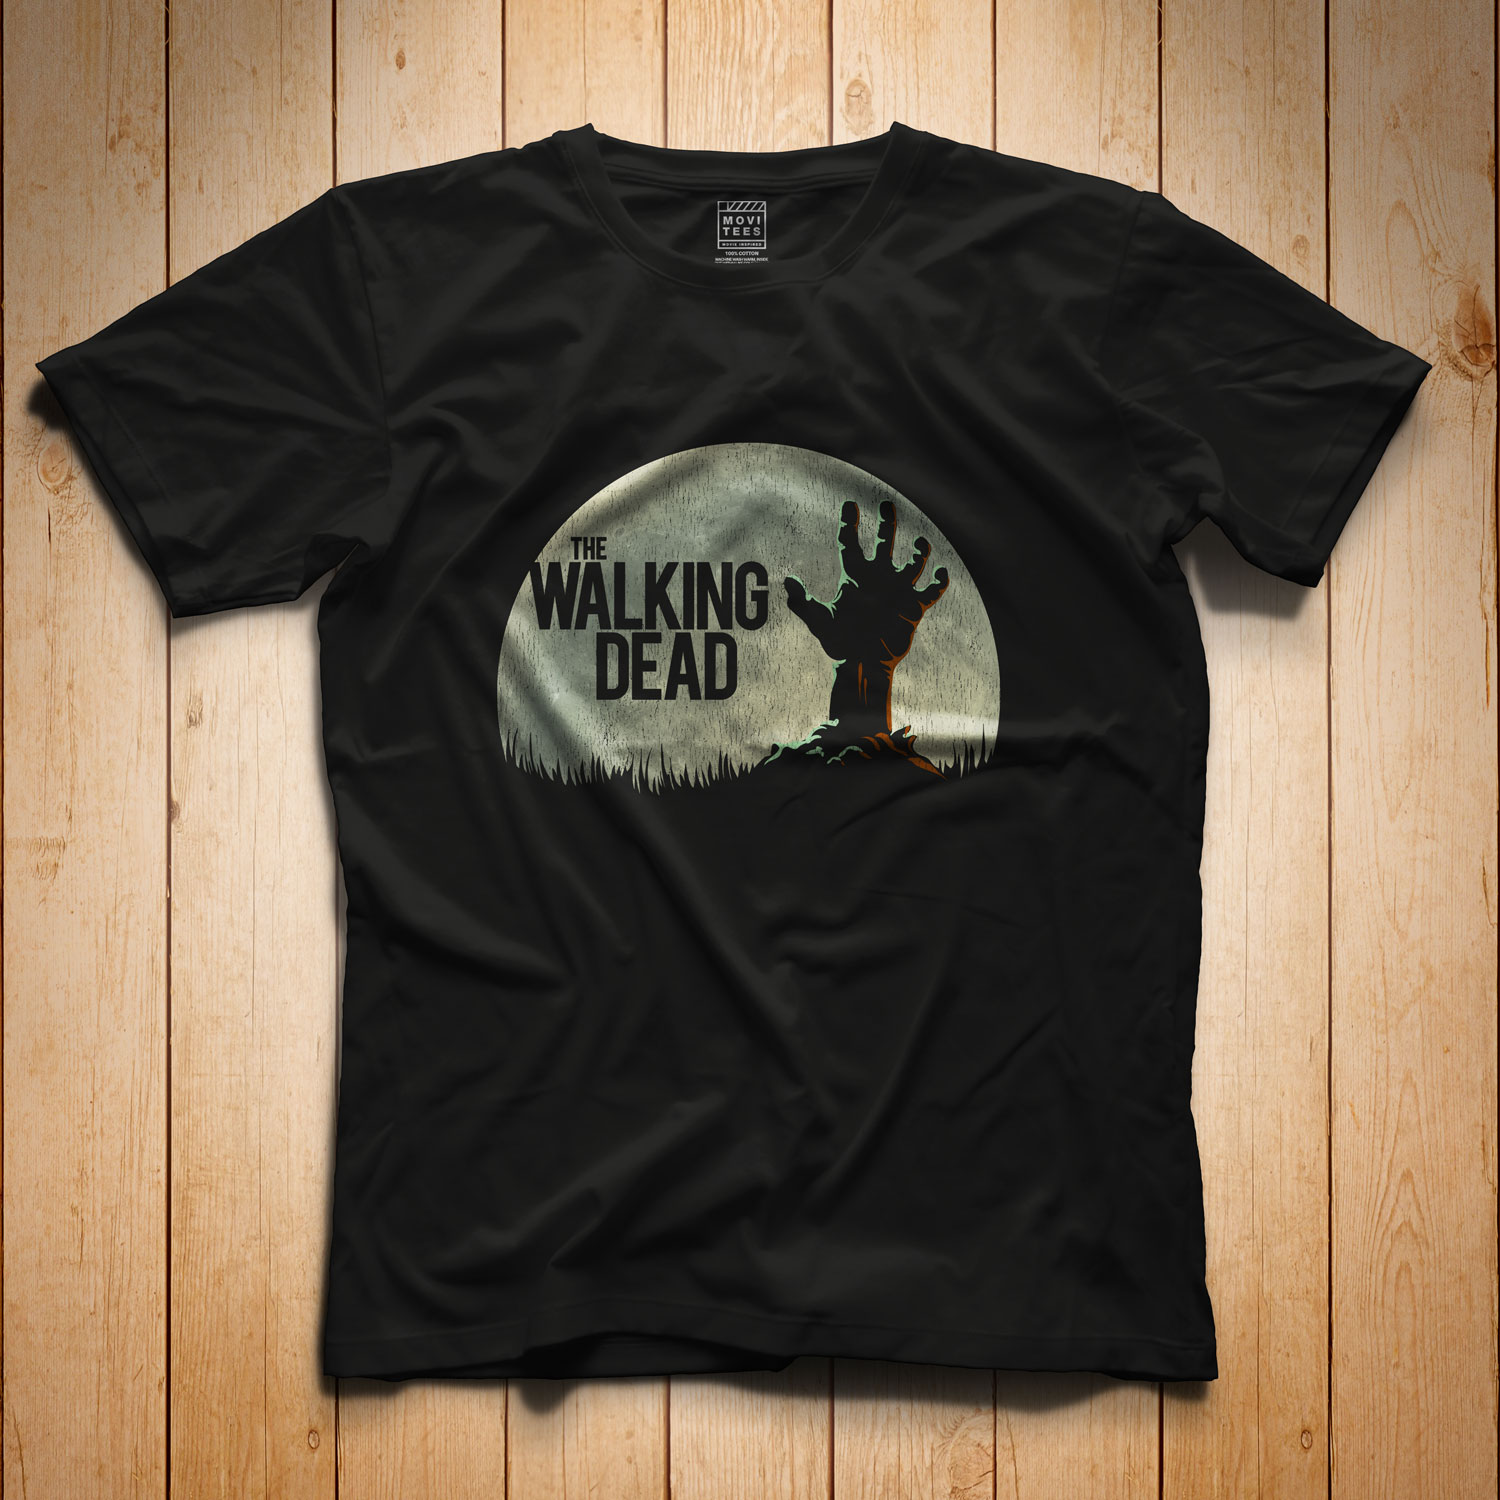 Dead T-Shirt inspired by Walking Dead Regular T-Shirt — MoviTees